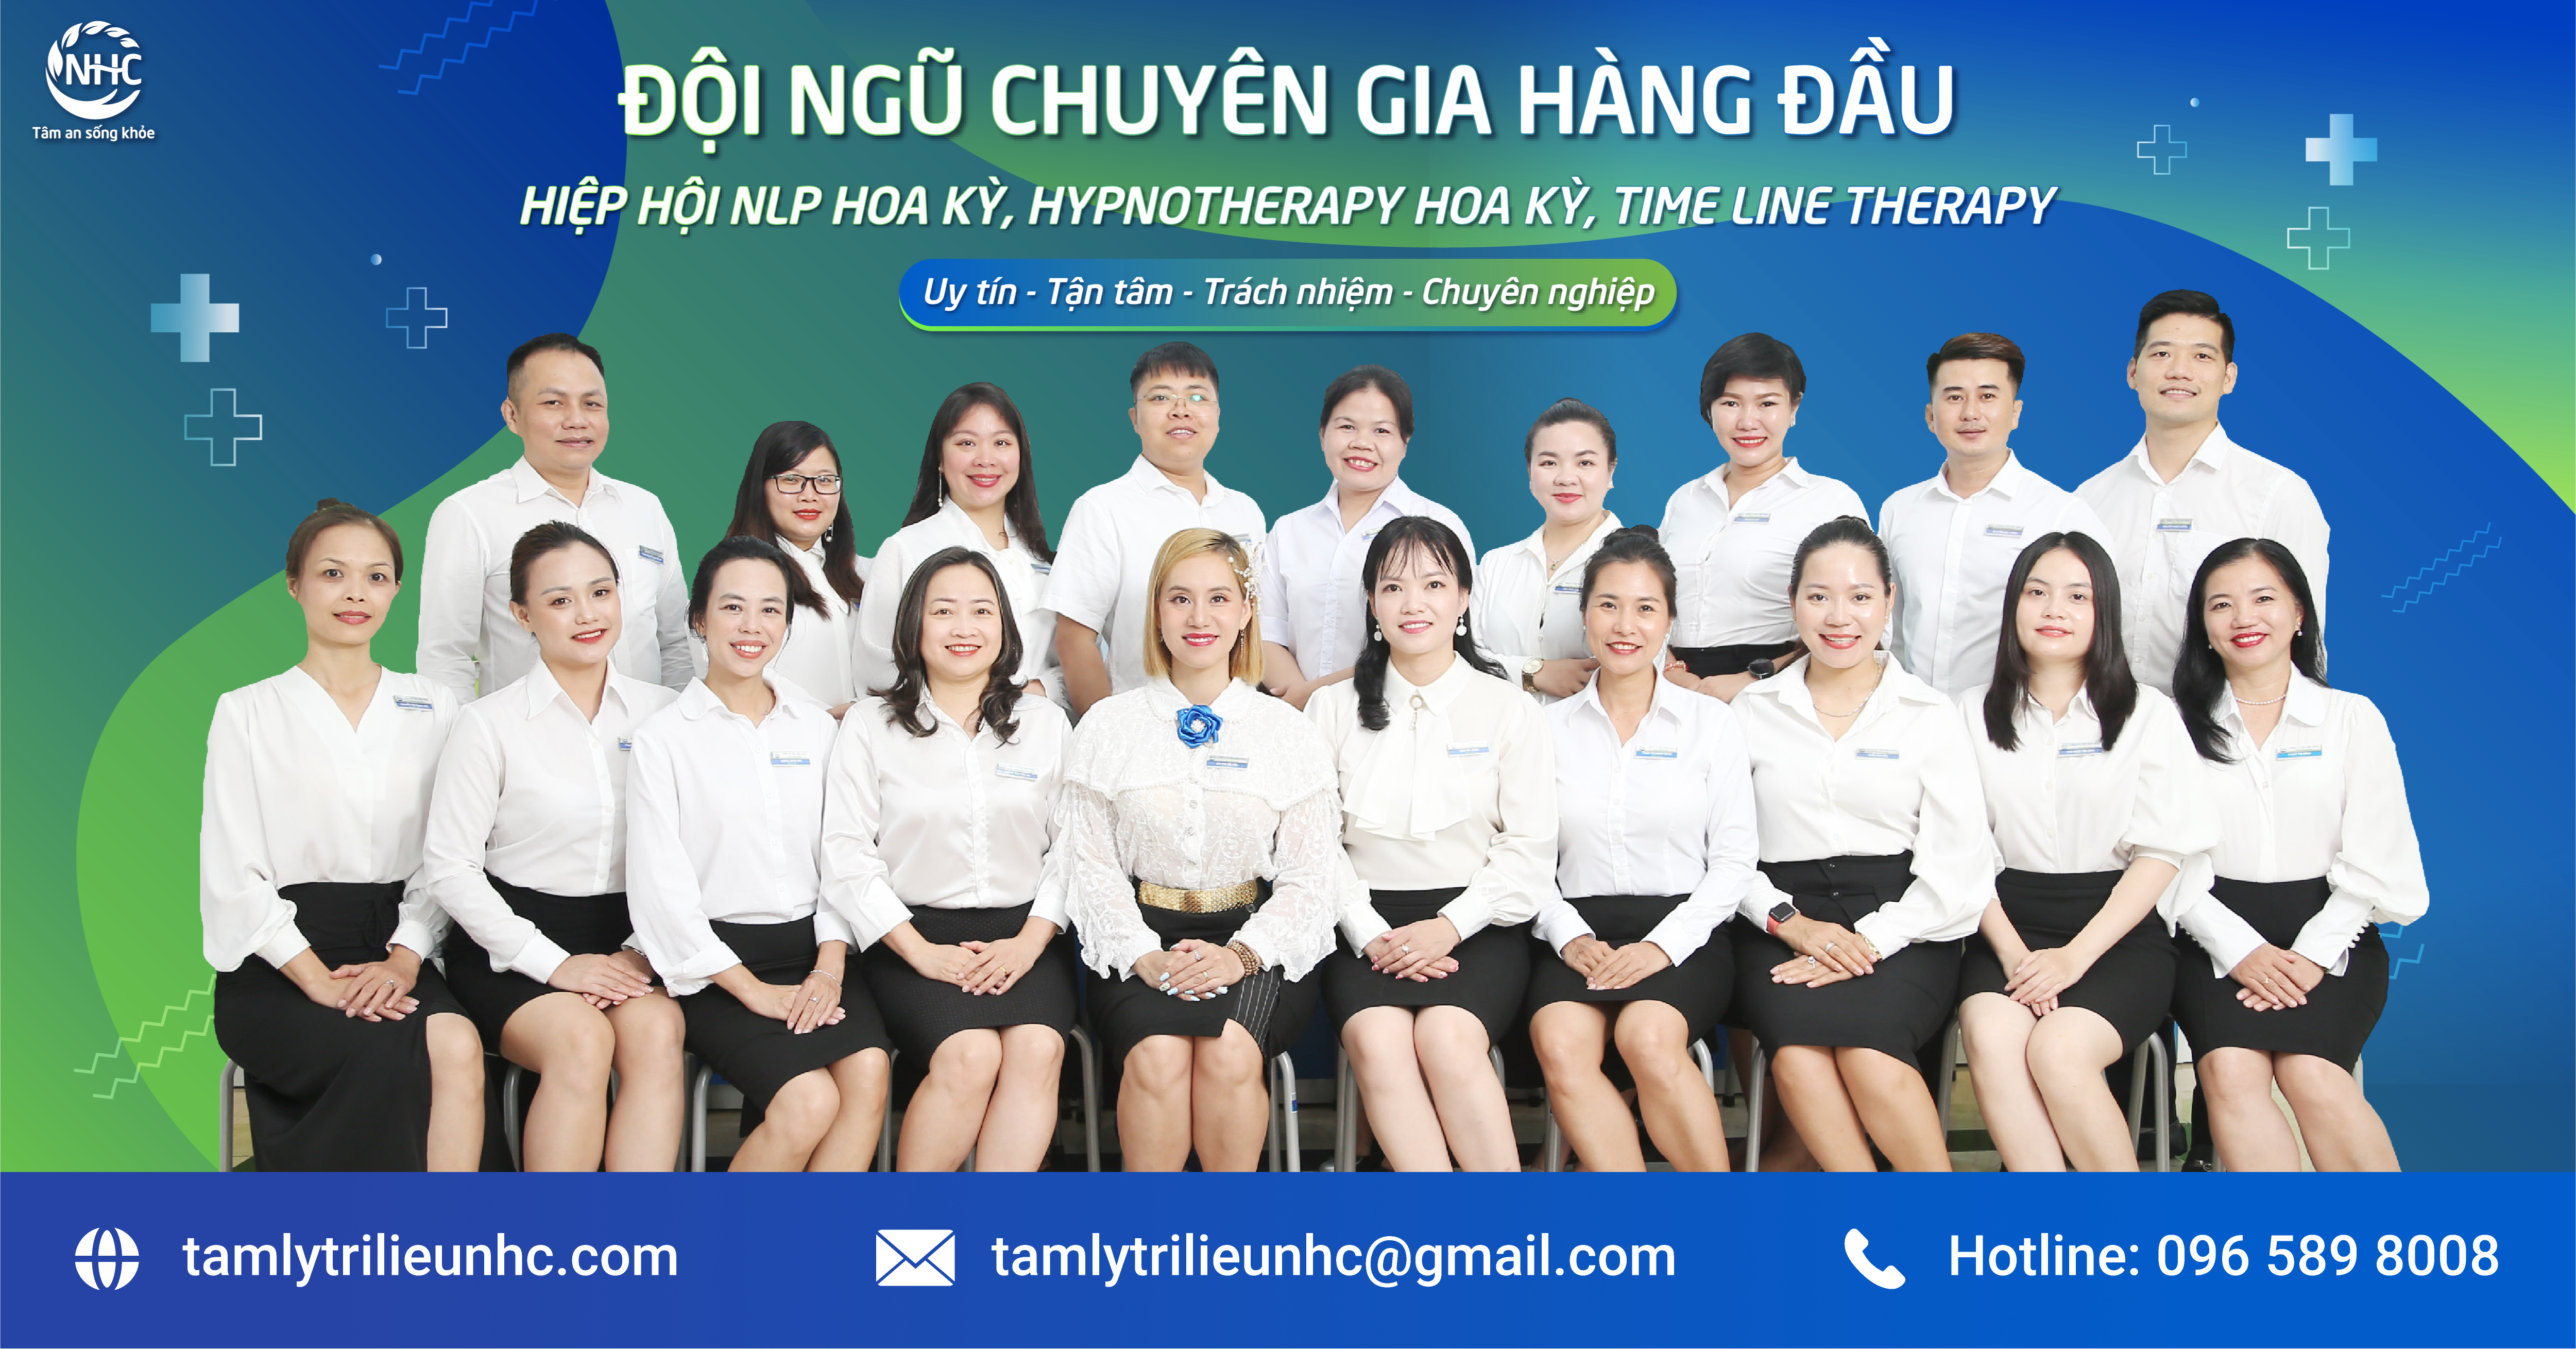 Trung tâm Tâm lý trị liệu NHC Việt Nam là đơn vị số 1 về tâm lý trị liệu không dùng thuốc tại Việt Nam